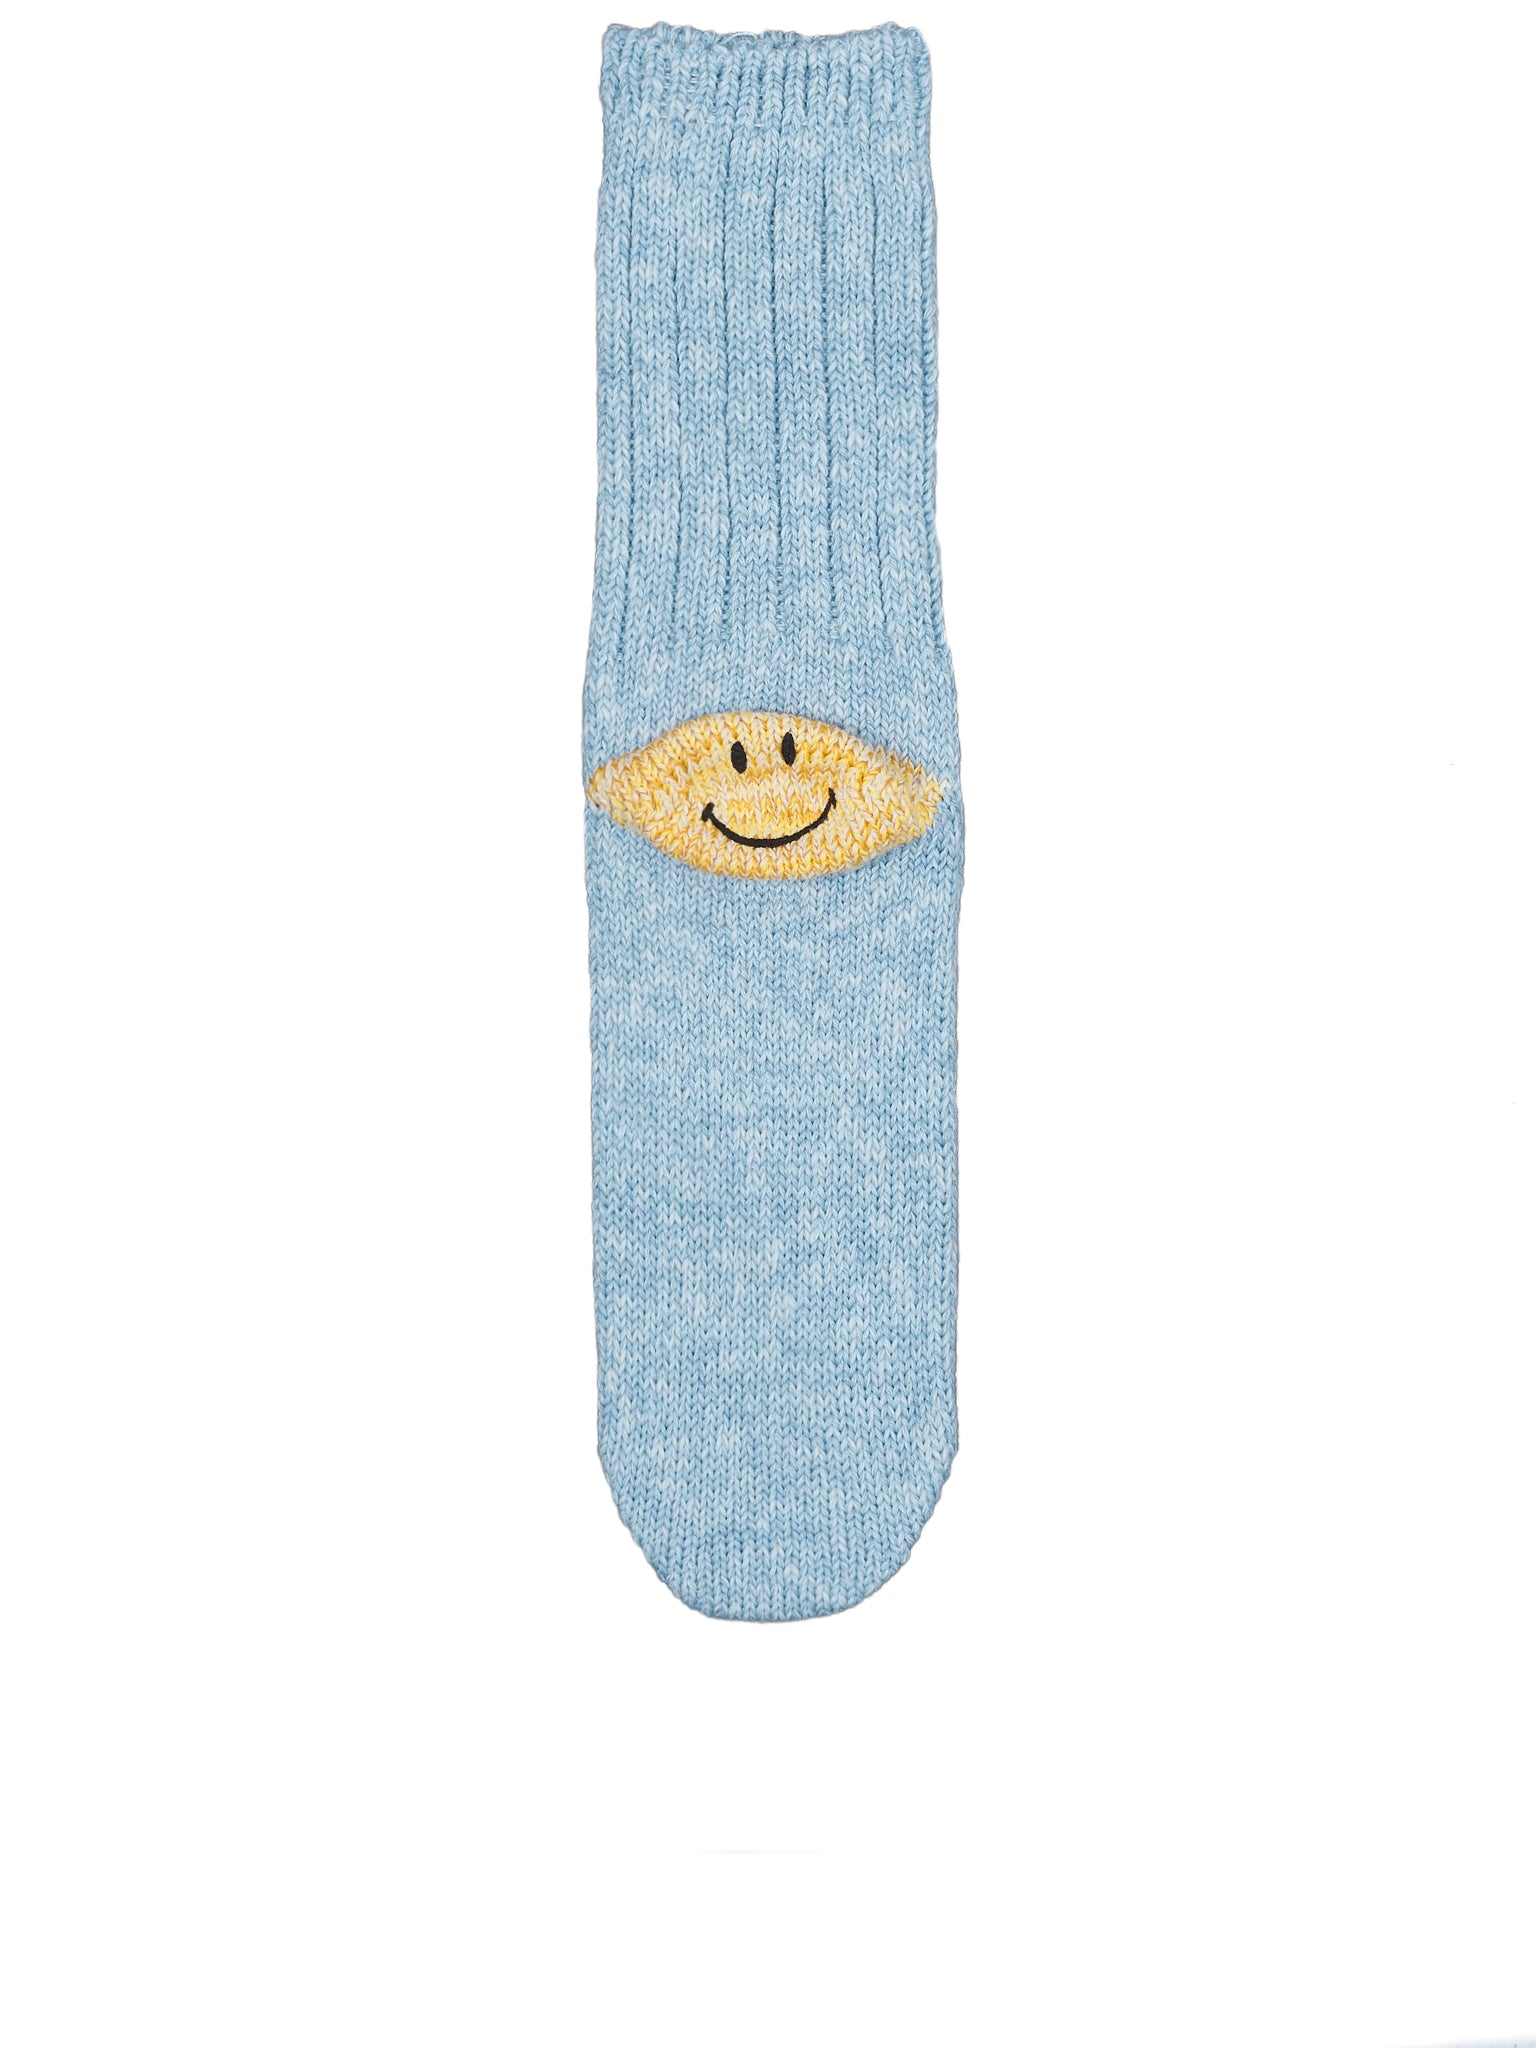 Smiley Socks (EK-887-BLUE)